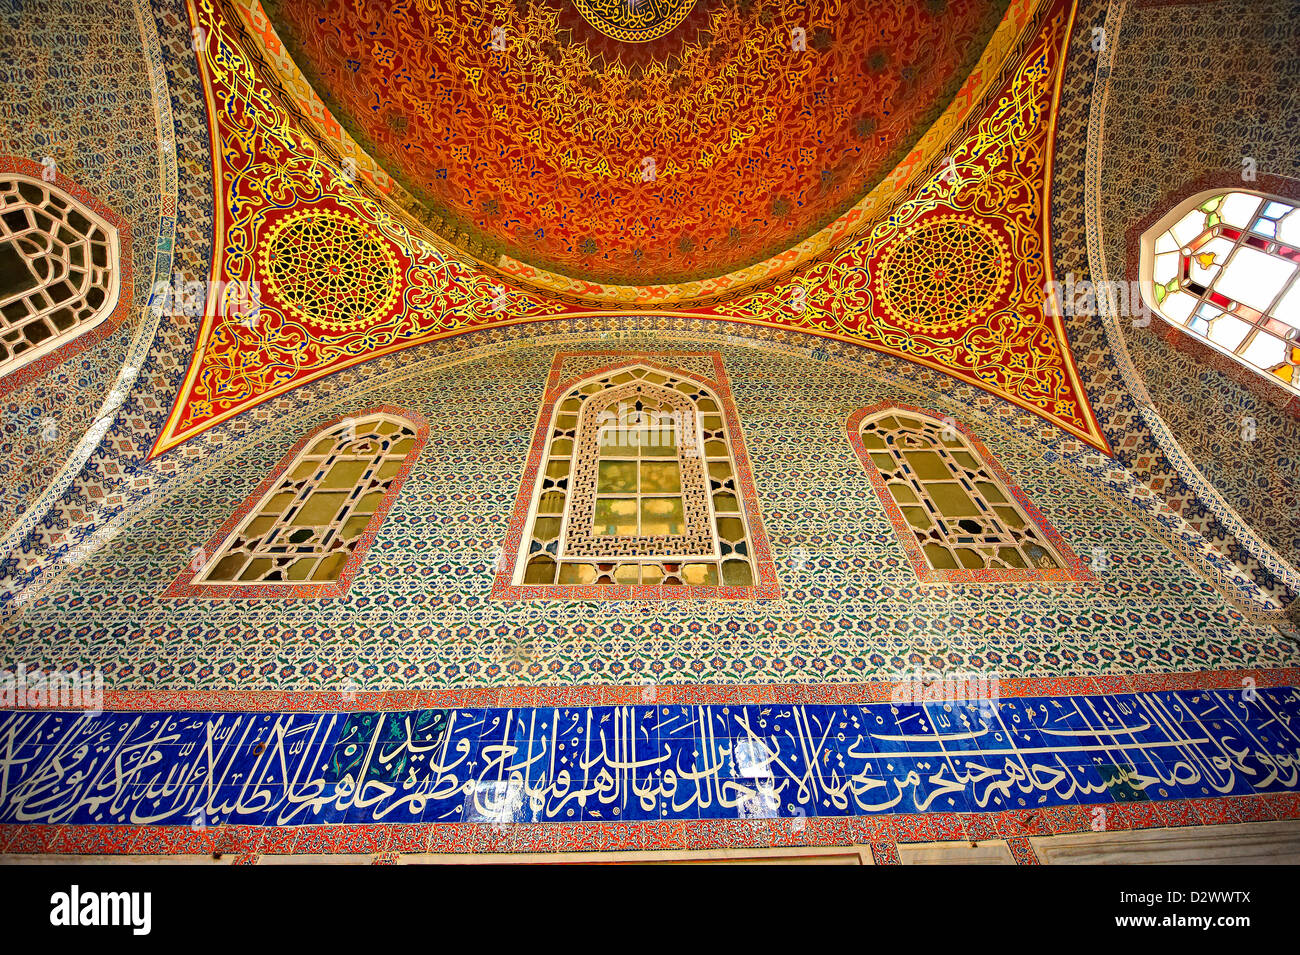 Chambre privé du sultan Murad III décoré de carreaux de 16ème siècle Iznk. Le Palais de Topkapi, Istanbul, Turquie Banque D'Images